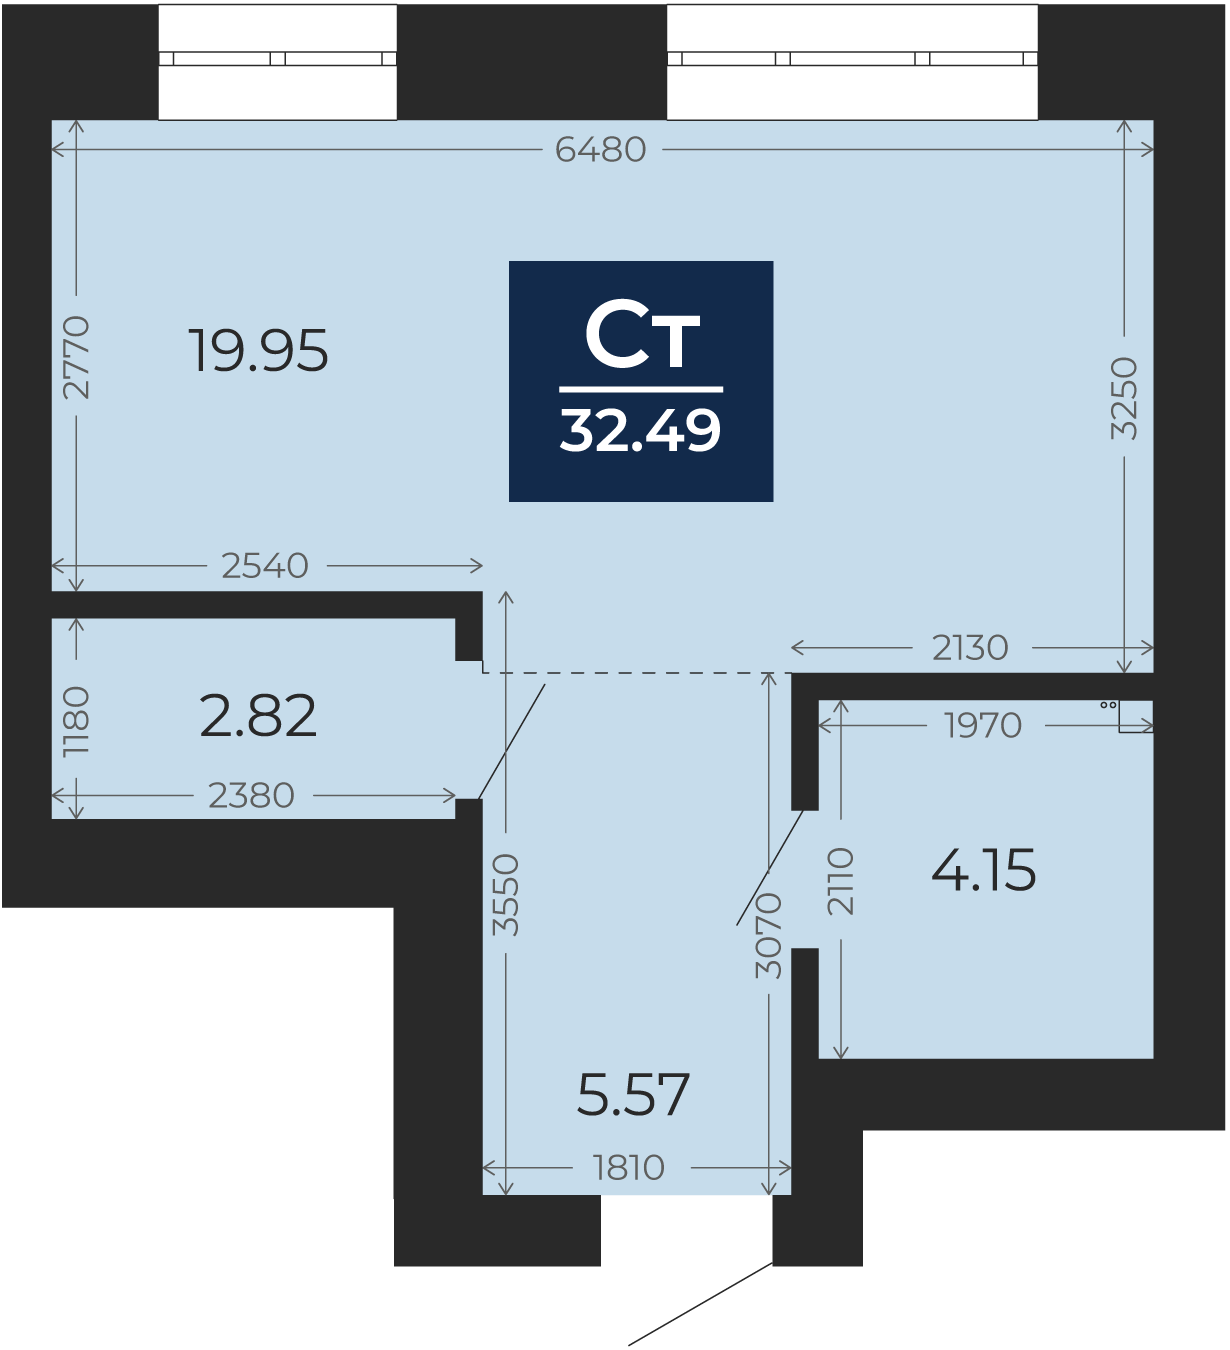 Квартира № 47, Студия, 32.49 кв. м, 8 этаж